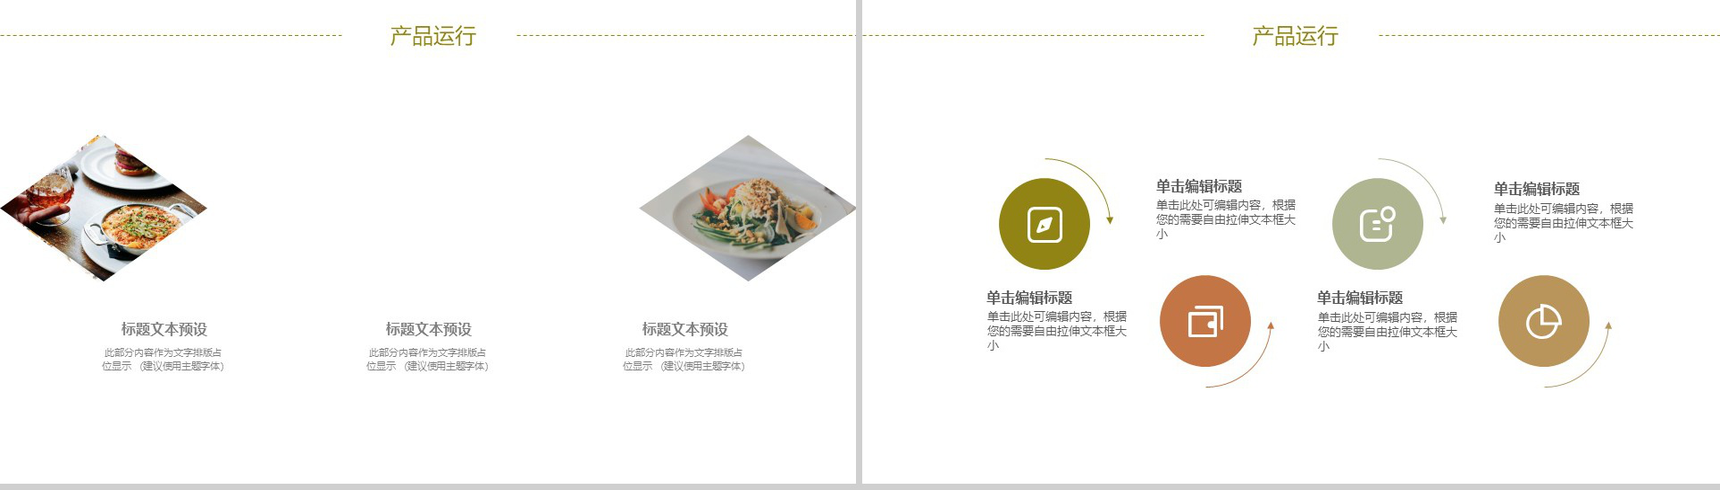 极简商务野菌美食宴项目宣传推广策划PPT模板-6